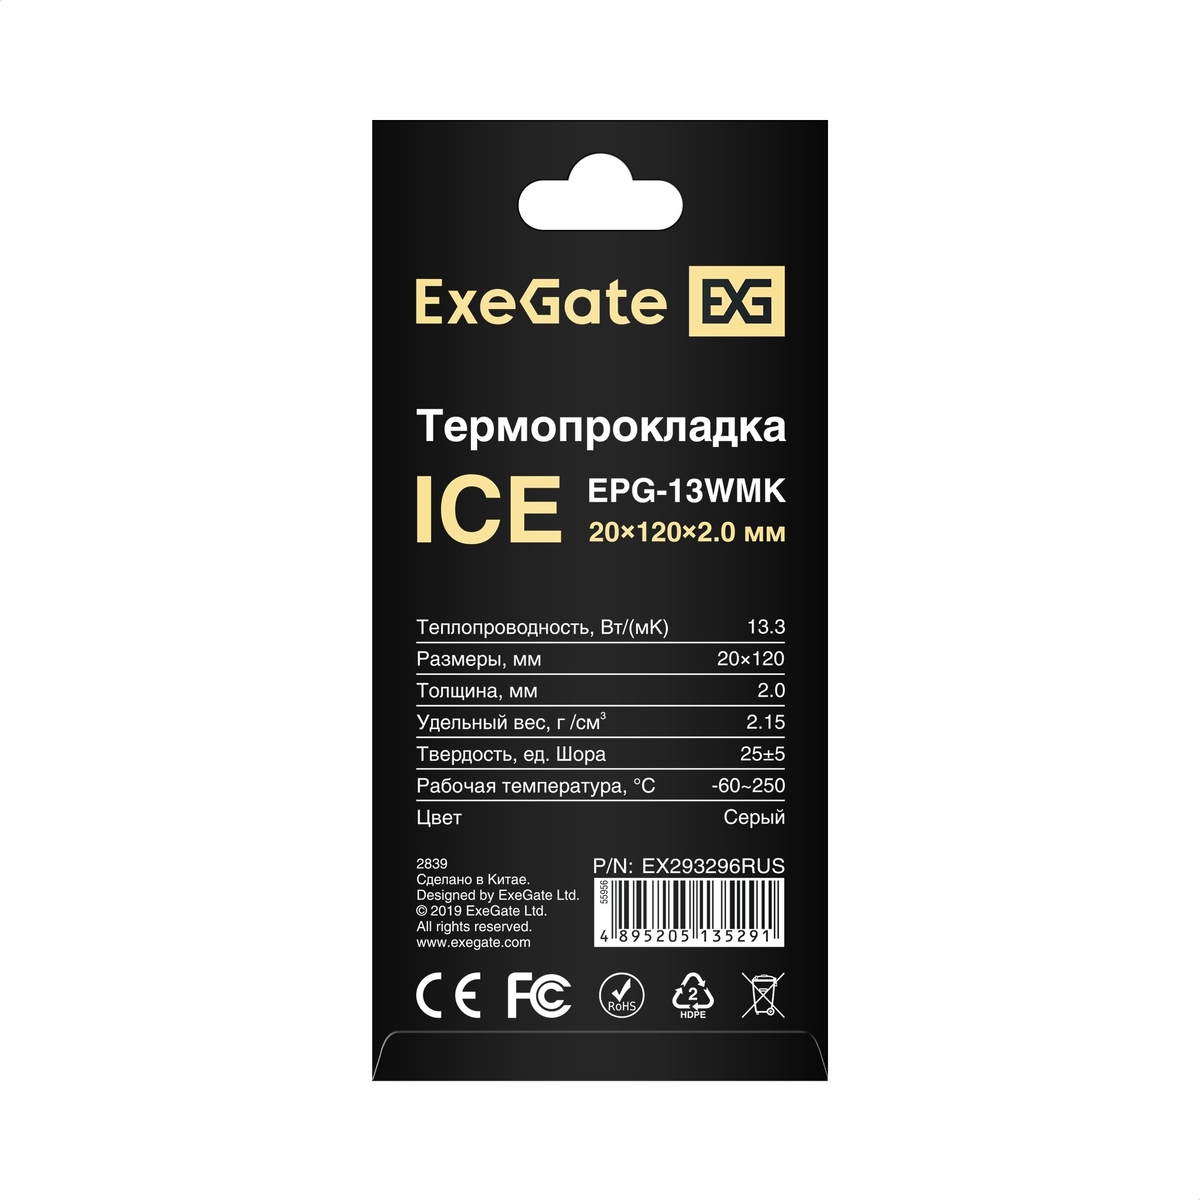  ExeGate Ice EPG-13WMK 20x120x2.0